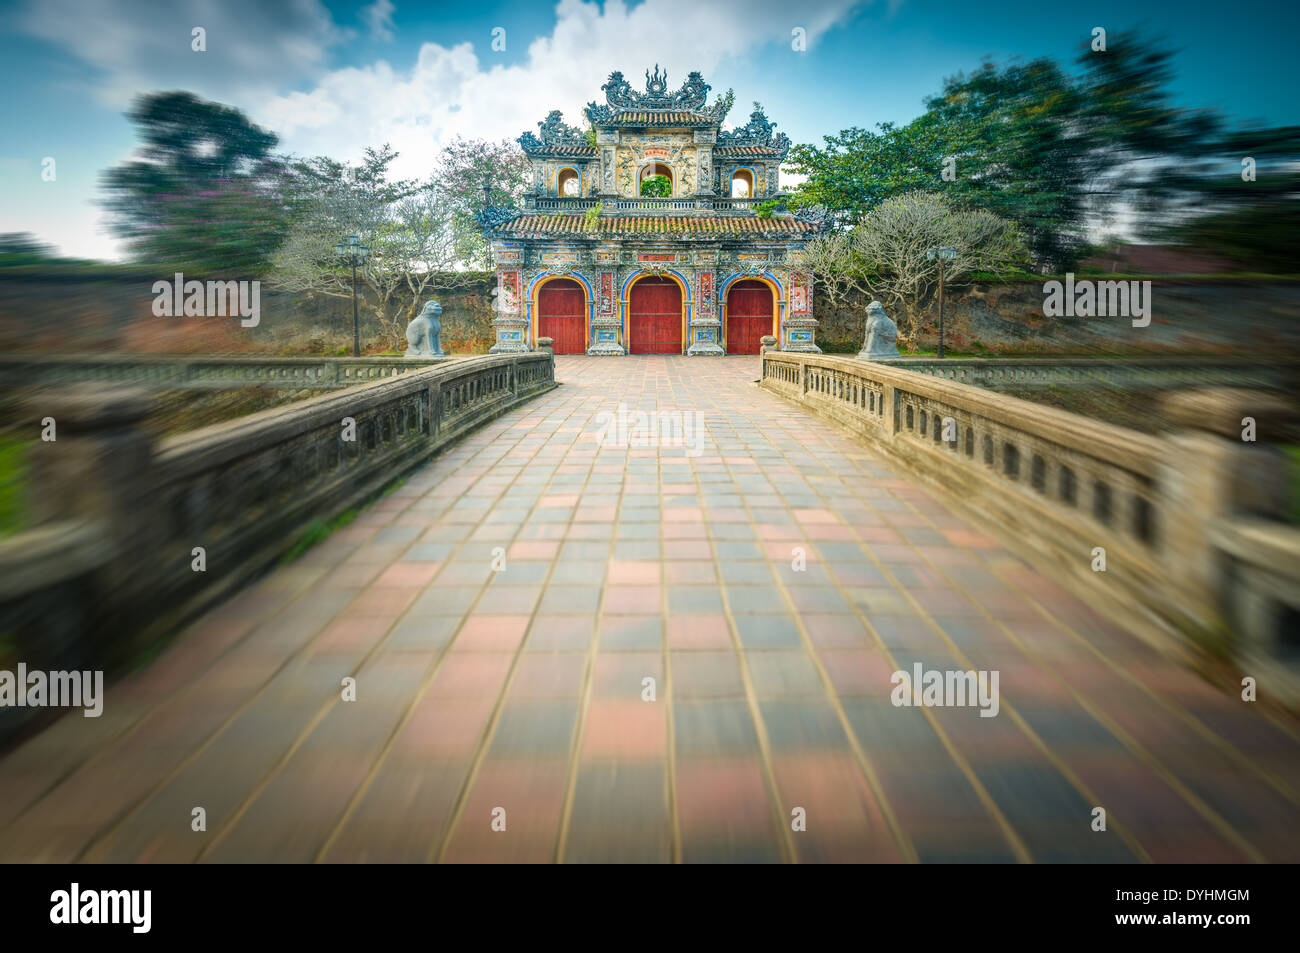 Fassade der das Tor zur Zitadelle in Hue, Vietnam, Asien. Verzierten Eingang zur Kaiserstadt Hue. Hellen Tag mit blauem Himmel und grünen Rasen. Stockfoto